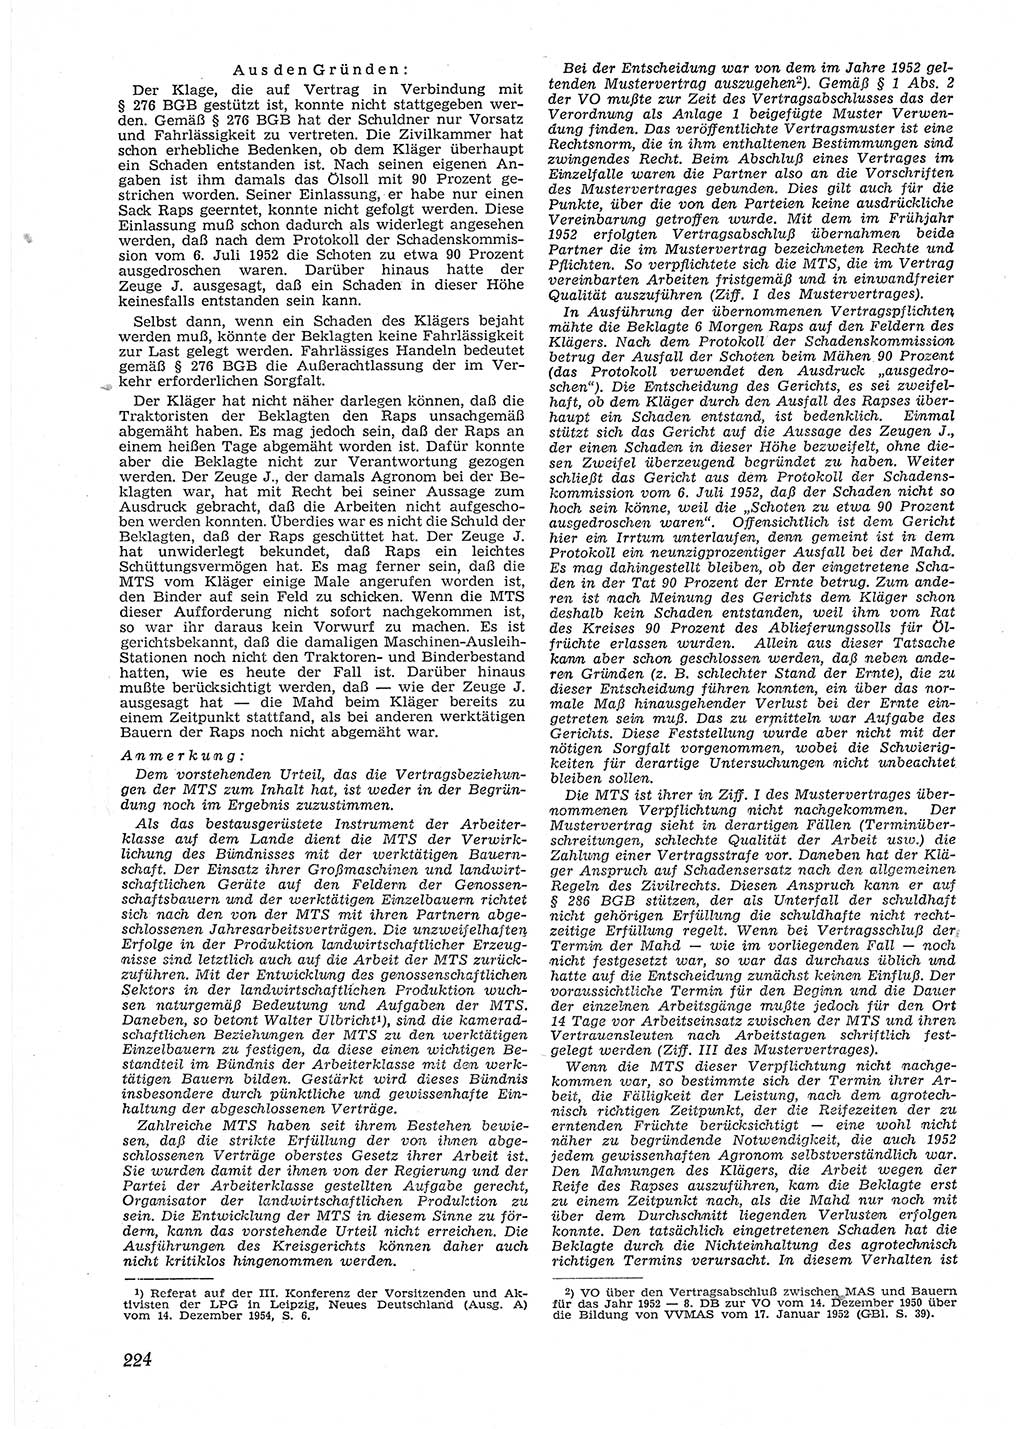 Neue Justiz (NJ), Zeitschrift für Recht und Rechtswissenschaft [Deutsche Demokratische Republik (DDR)], 9. Jahrgang 1955, Seite 224 (NJ DDR 1955, S. 224)